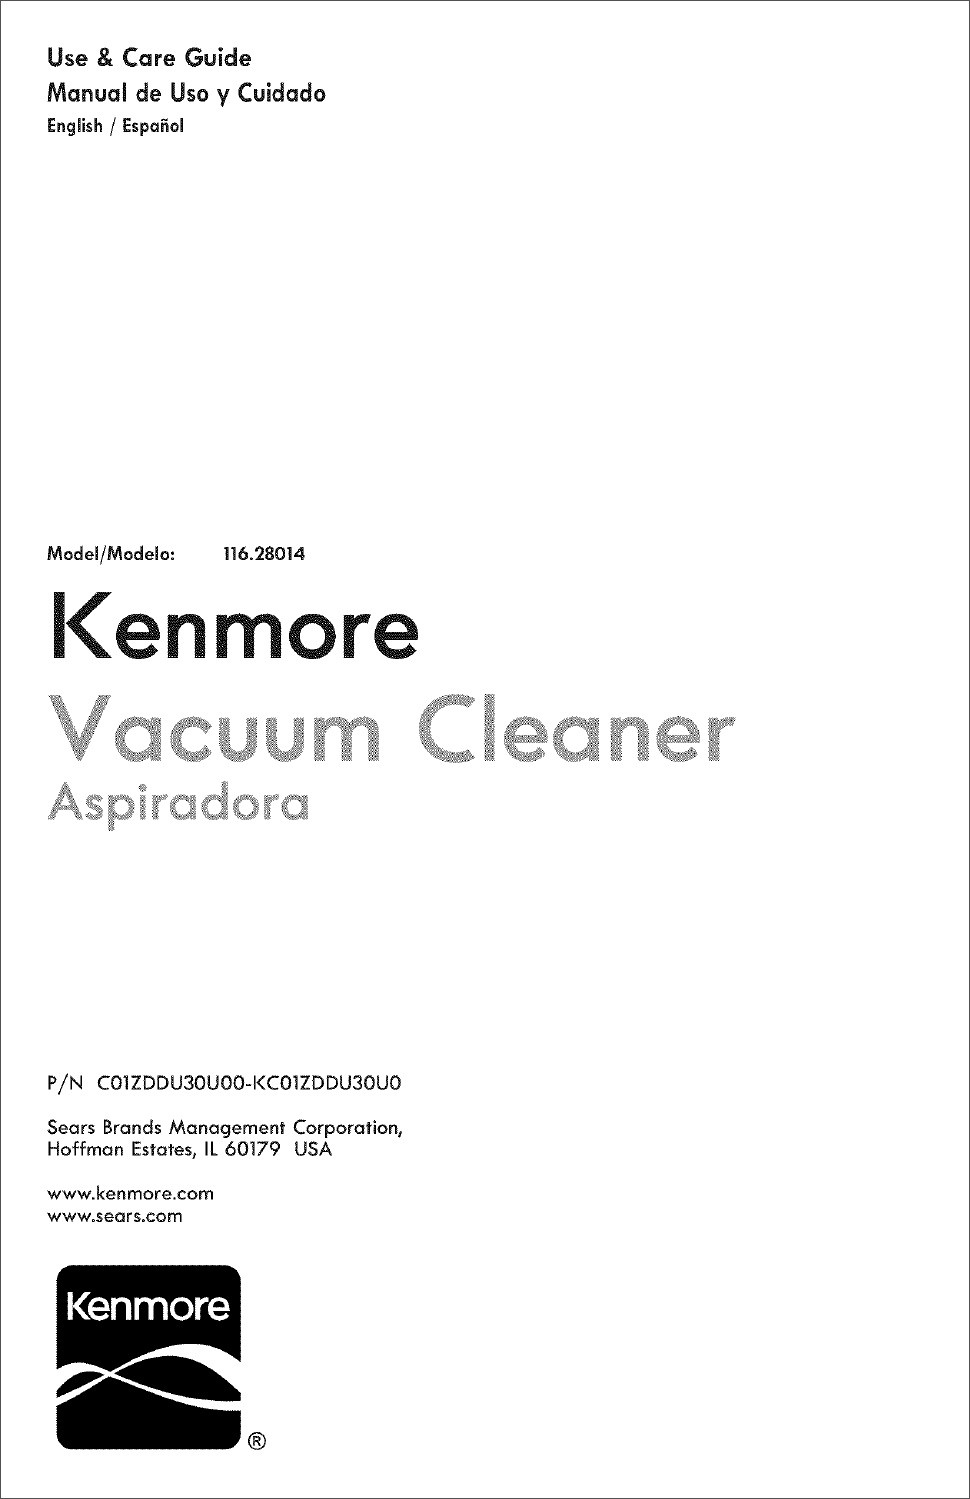 Kenmore Progressive Canister Vacuum User Manual